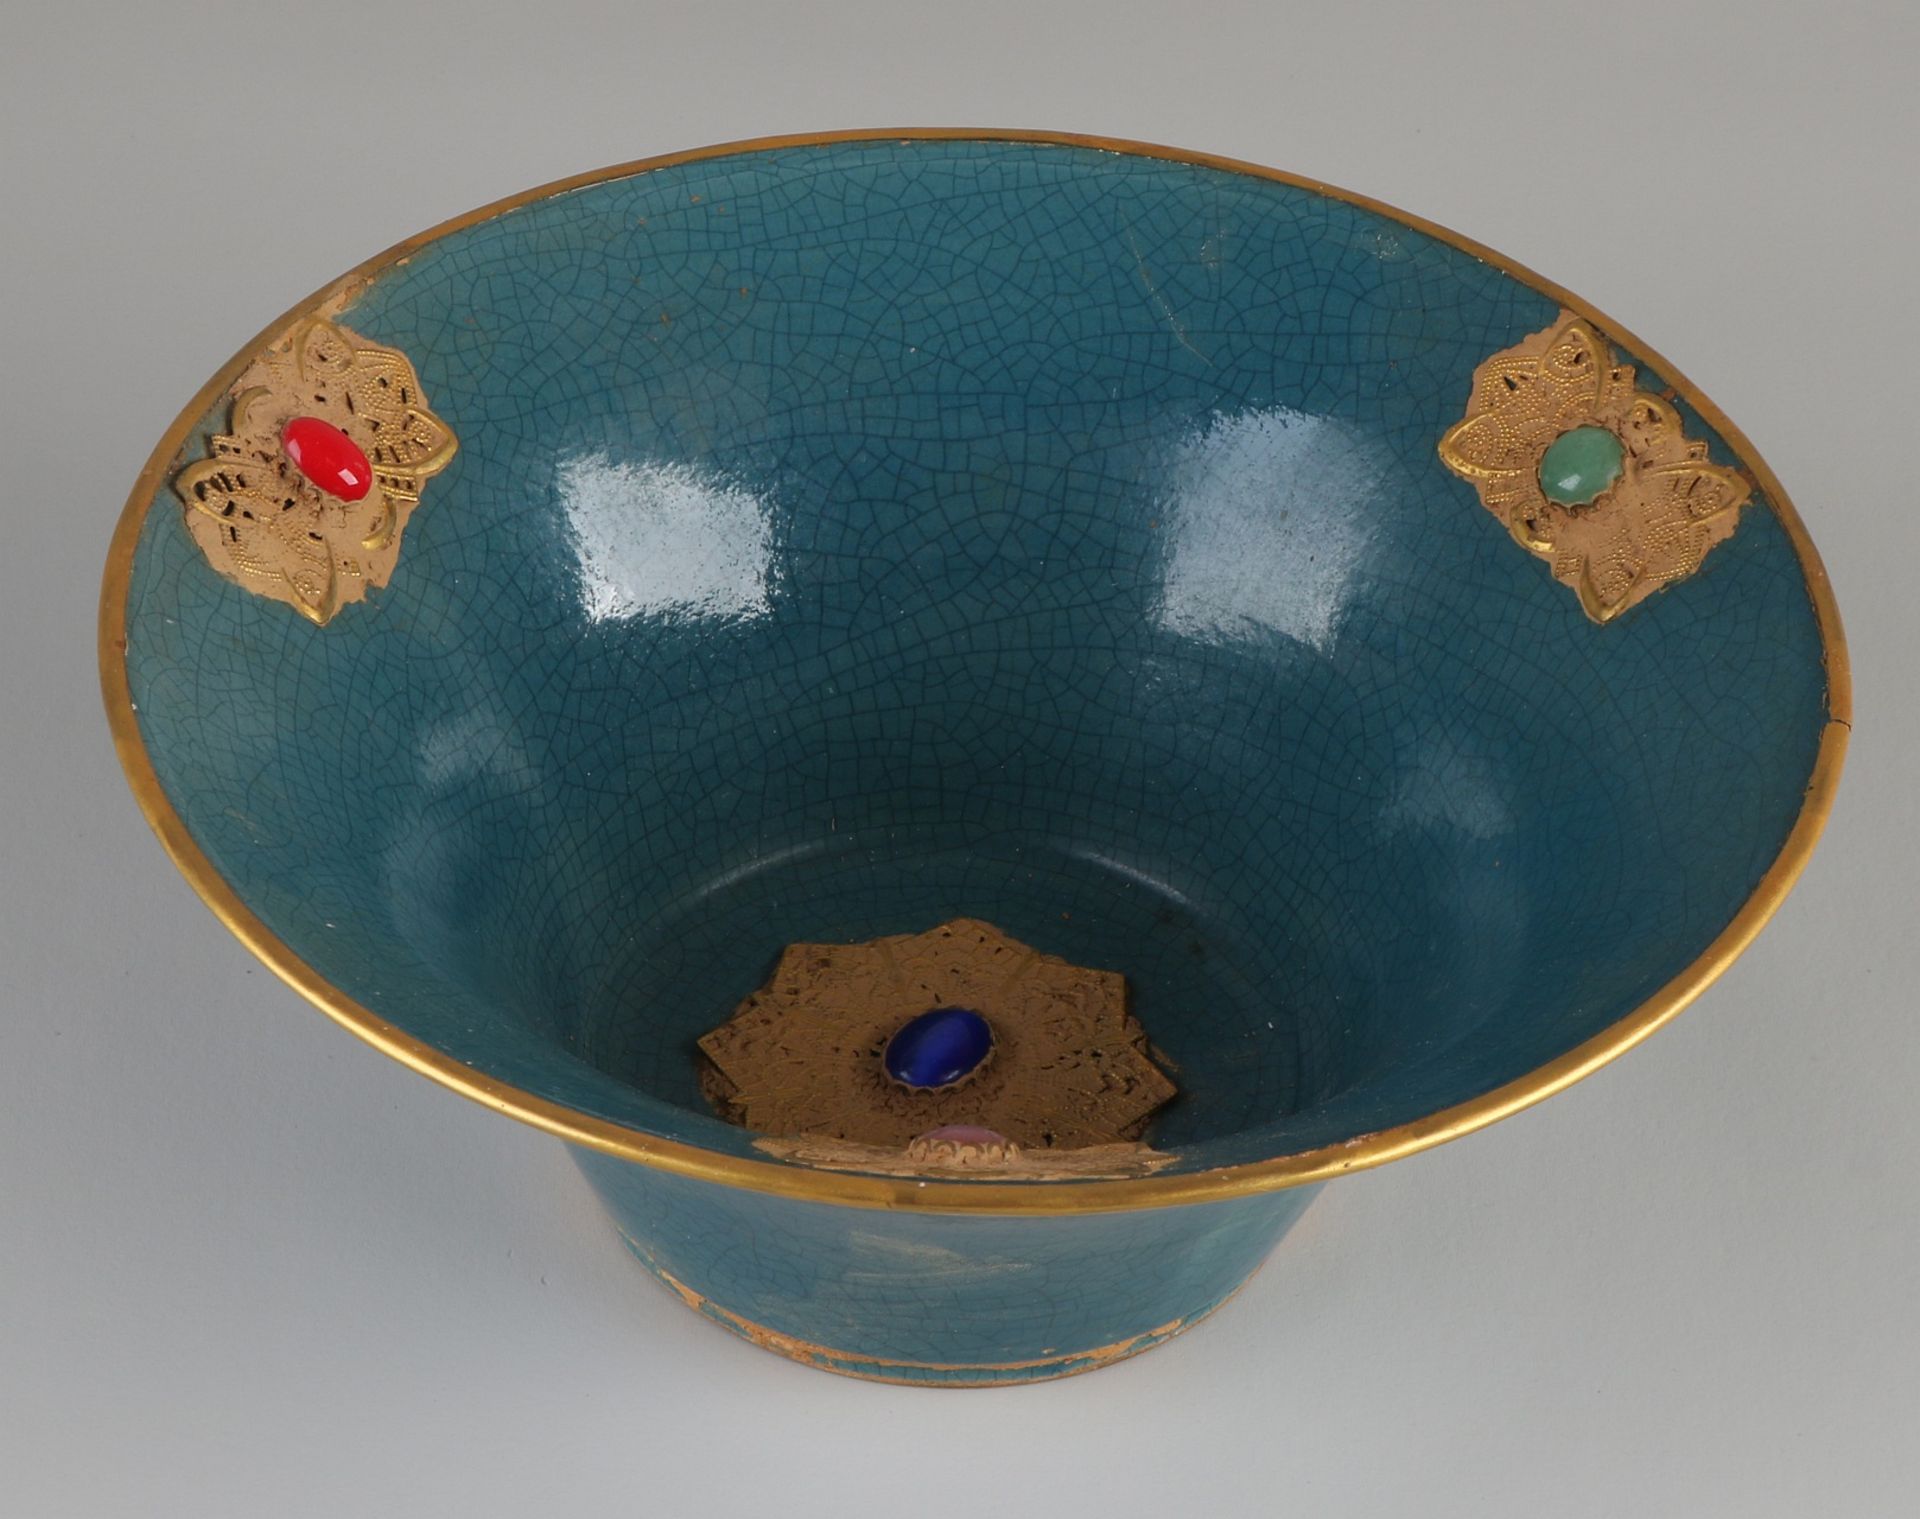 Chinesische Porzellanschale mit blauer Glasur und Goldrelief + Steinen. Abmessungen: H 9 x Ø 22 c